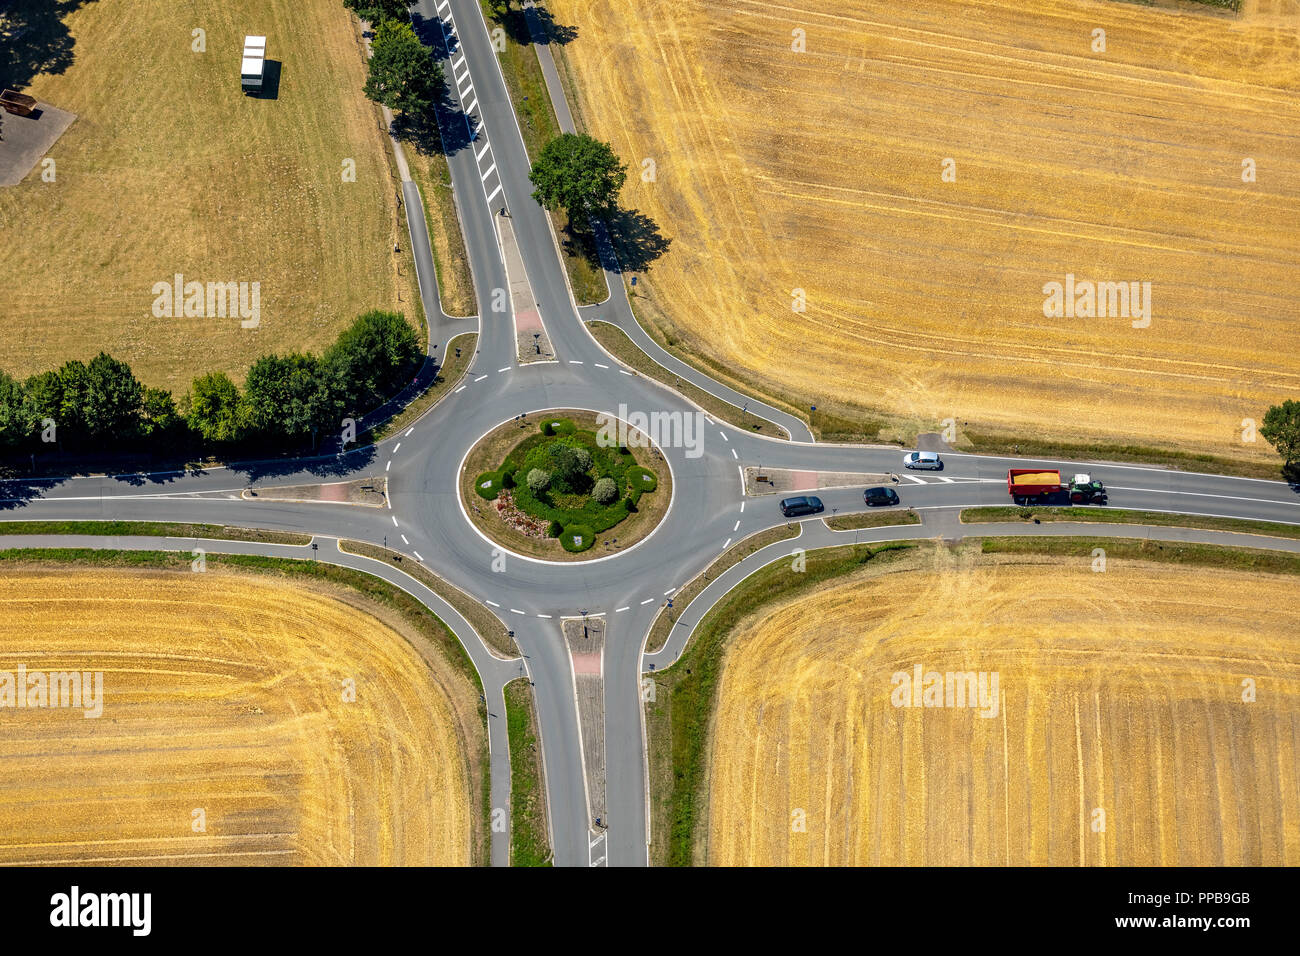 Vue aérienne, rond-point entre les champs récoltés, Westring, Beelen, Münsterland, Rhénanie du Nord-Westphalie, Allemagne Banque D'Images